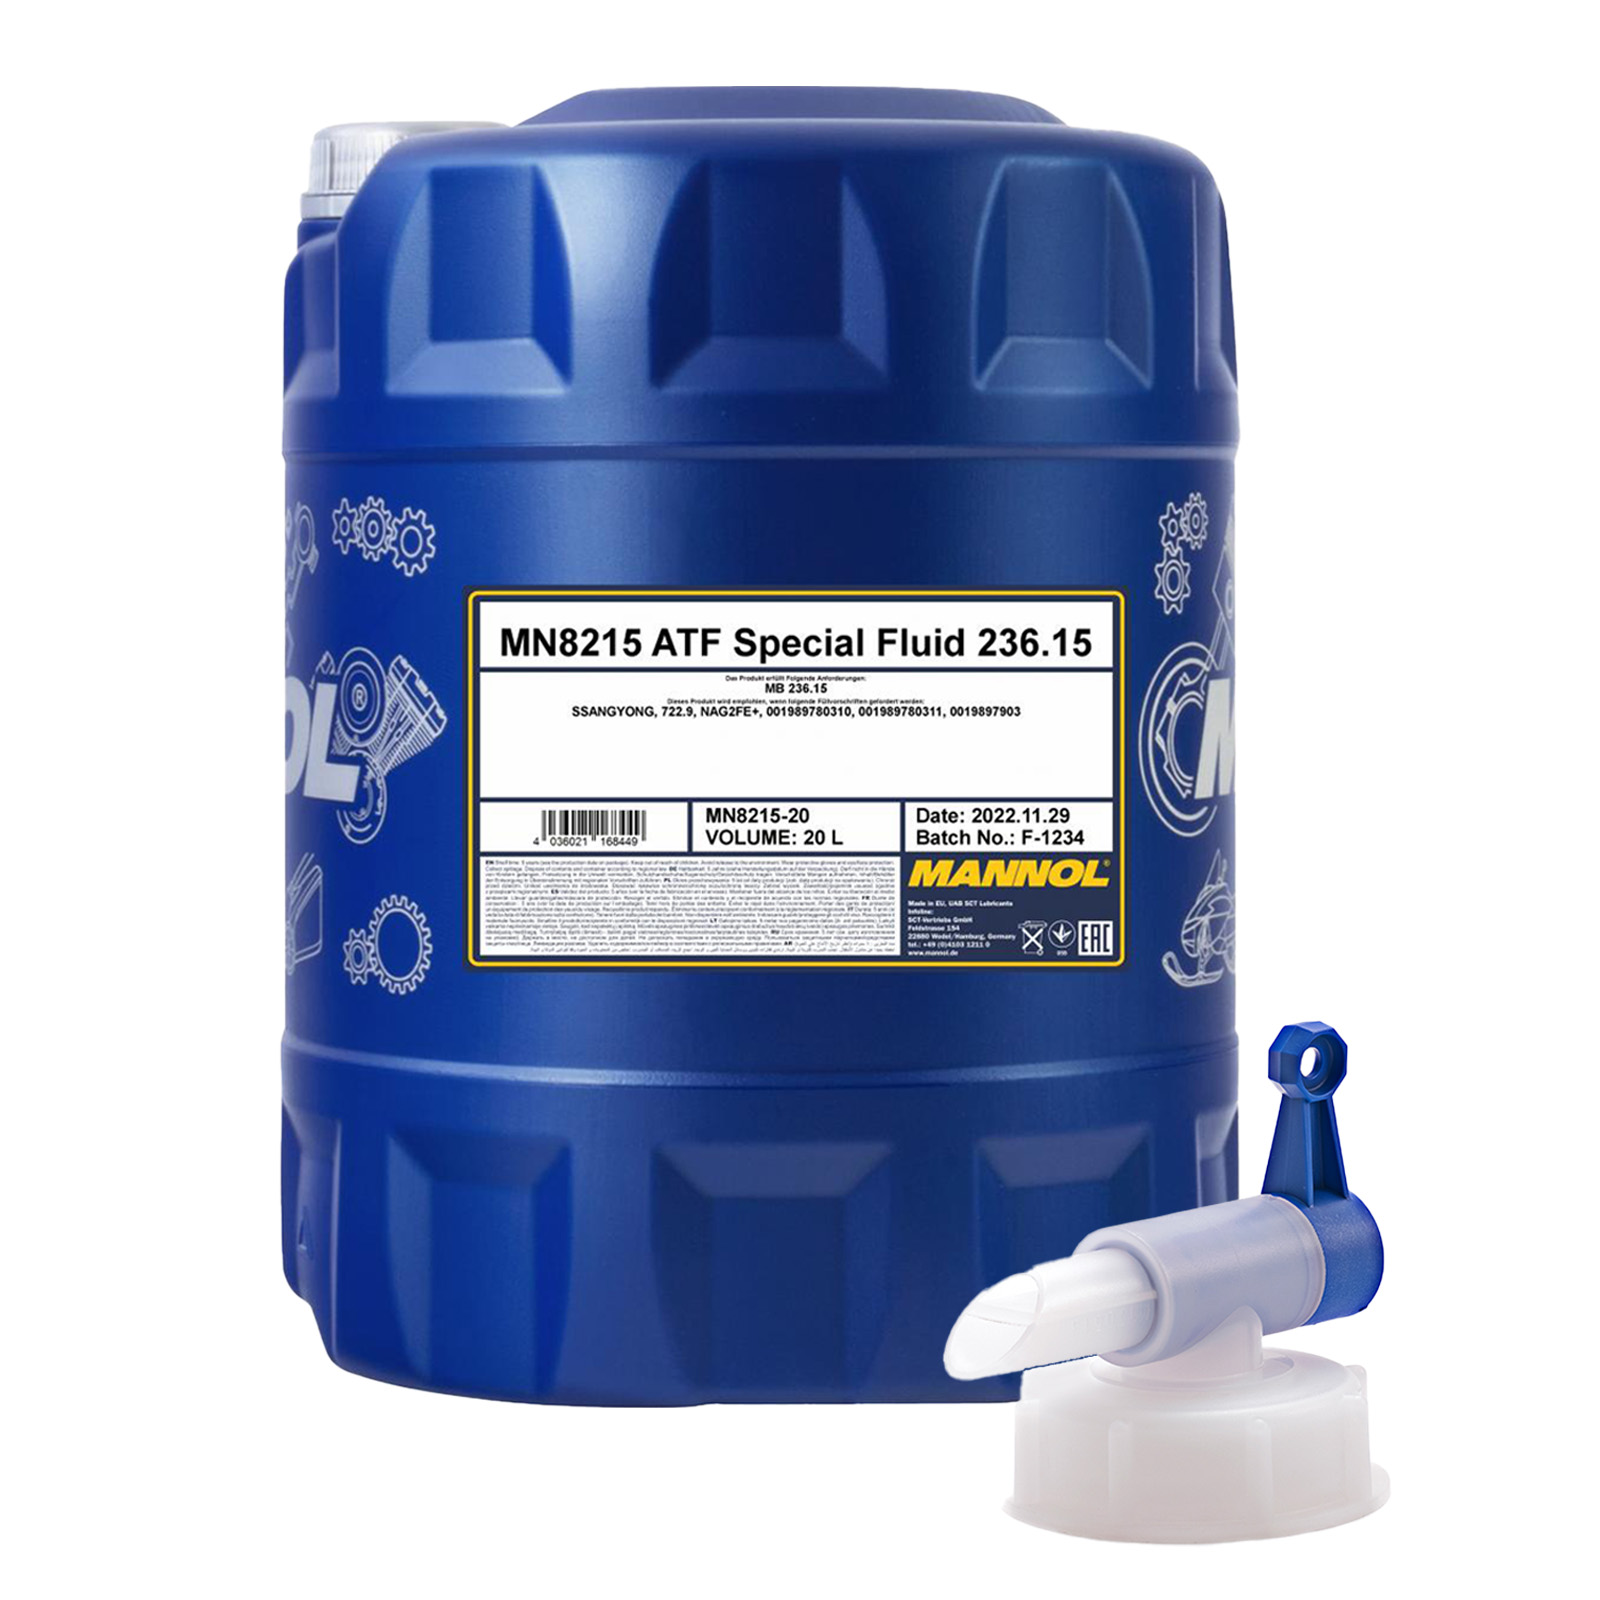 20 Liter MANNOL ATF Special Fluid MB 236.15 MN8215-20 + Ablasshahn